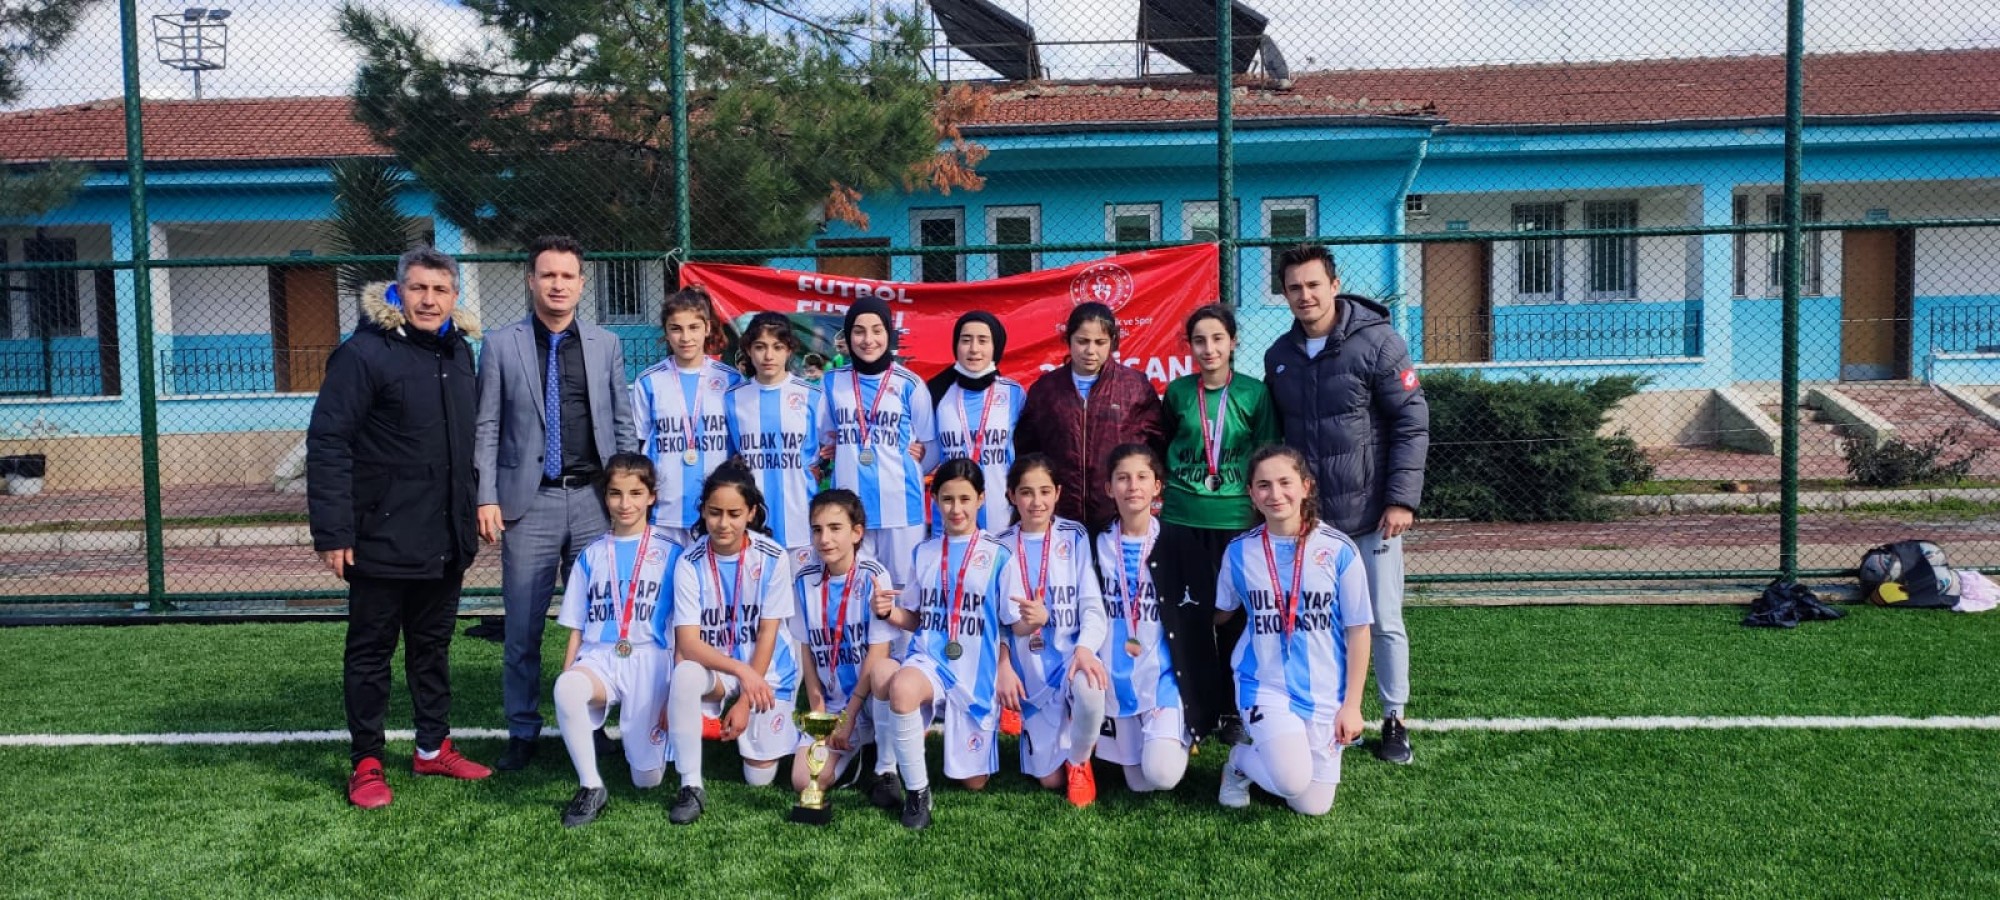 Urfalı kızlar Türkiye şampiyonasına gidiyor